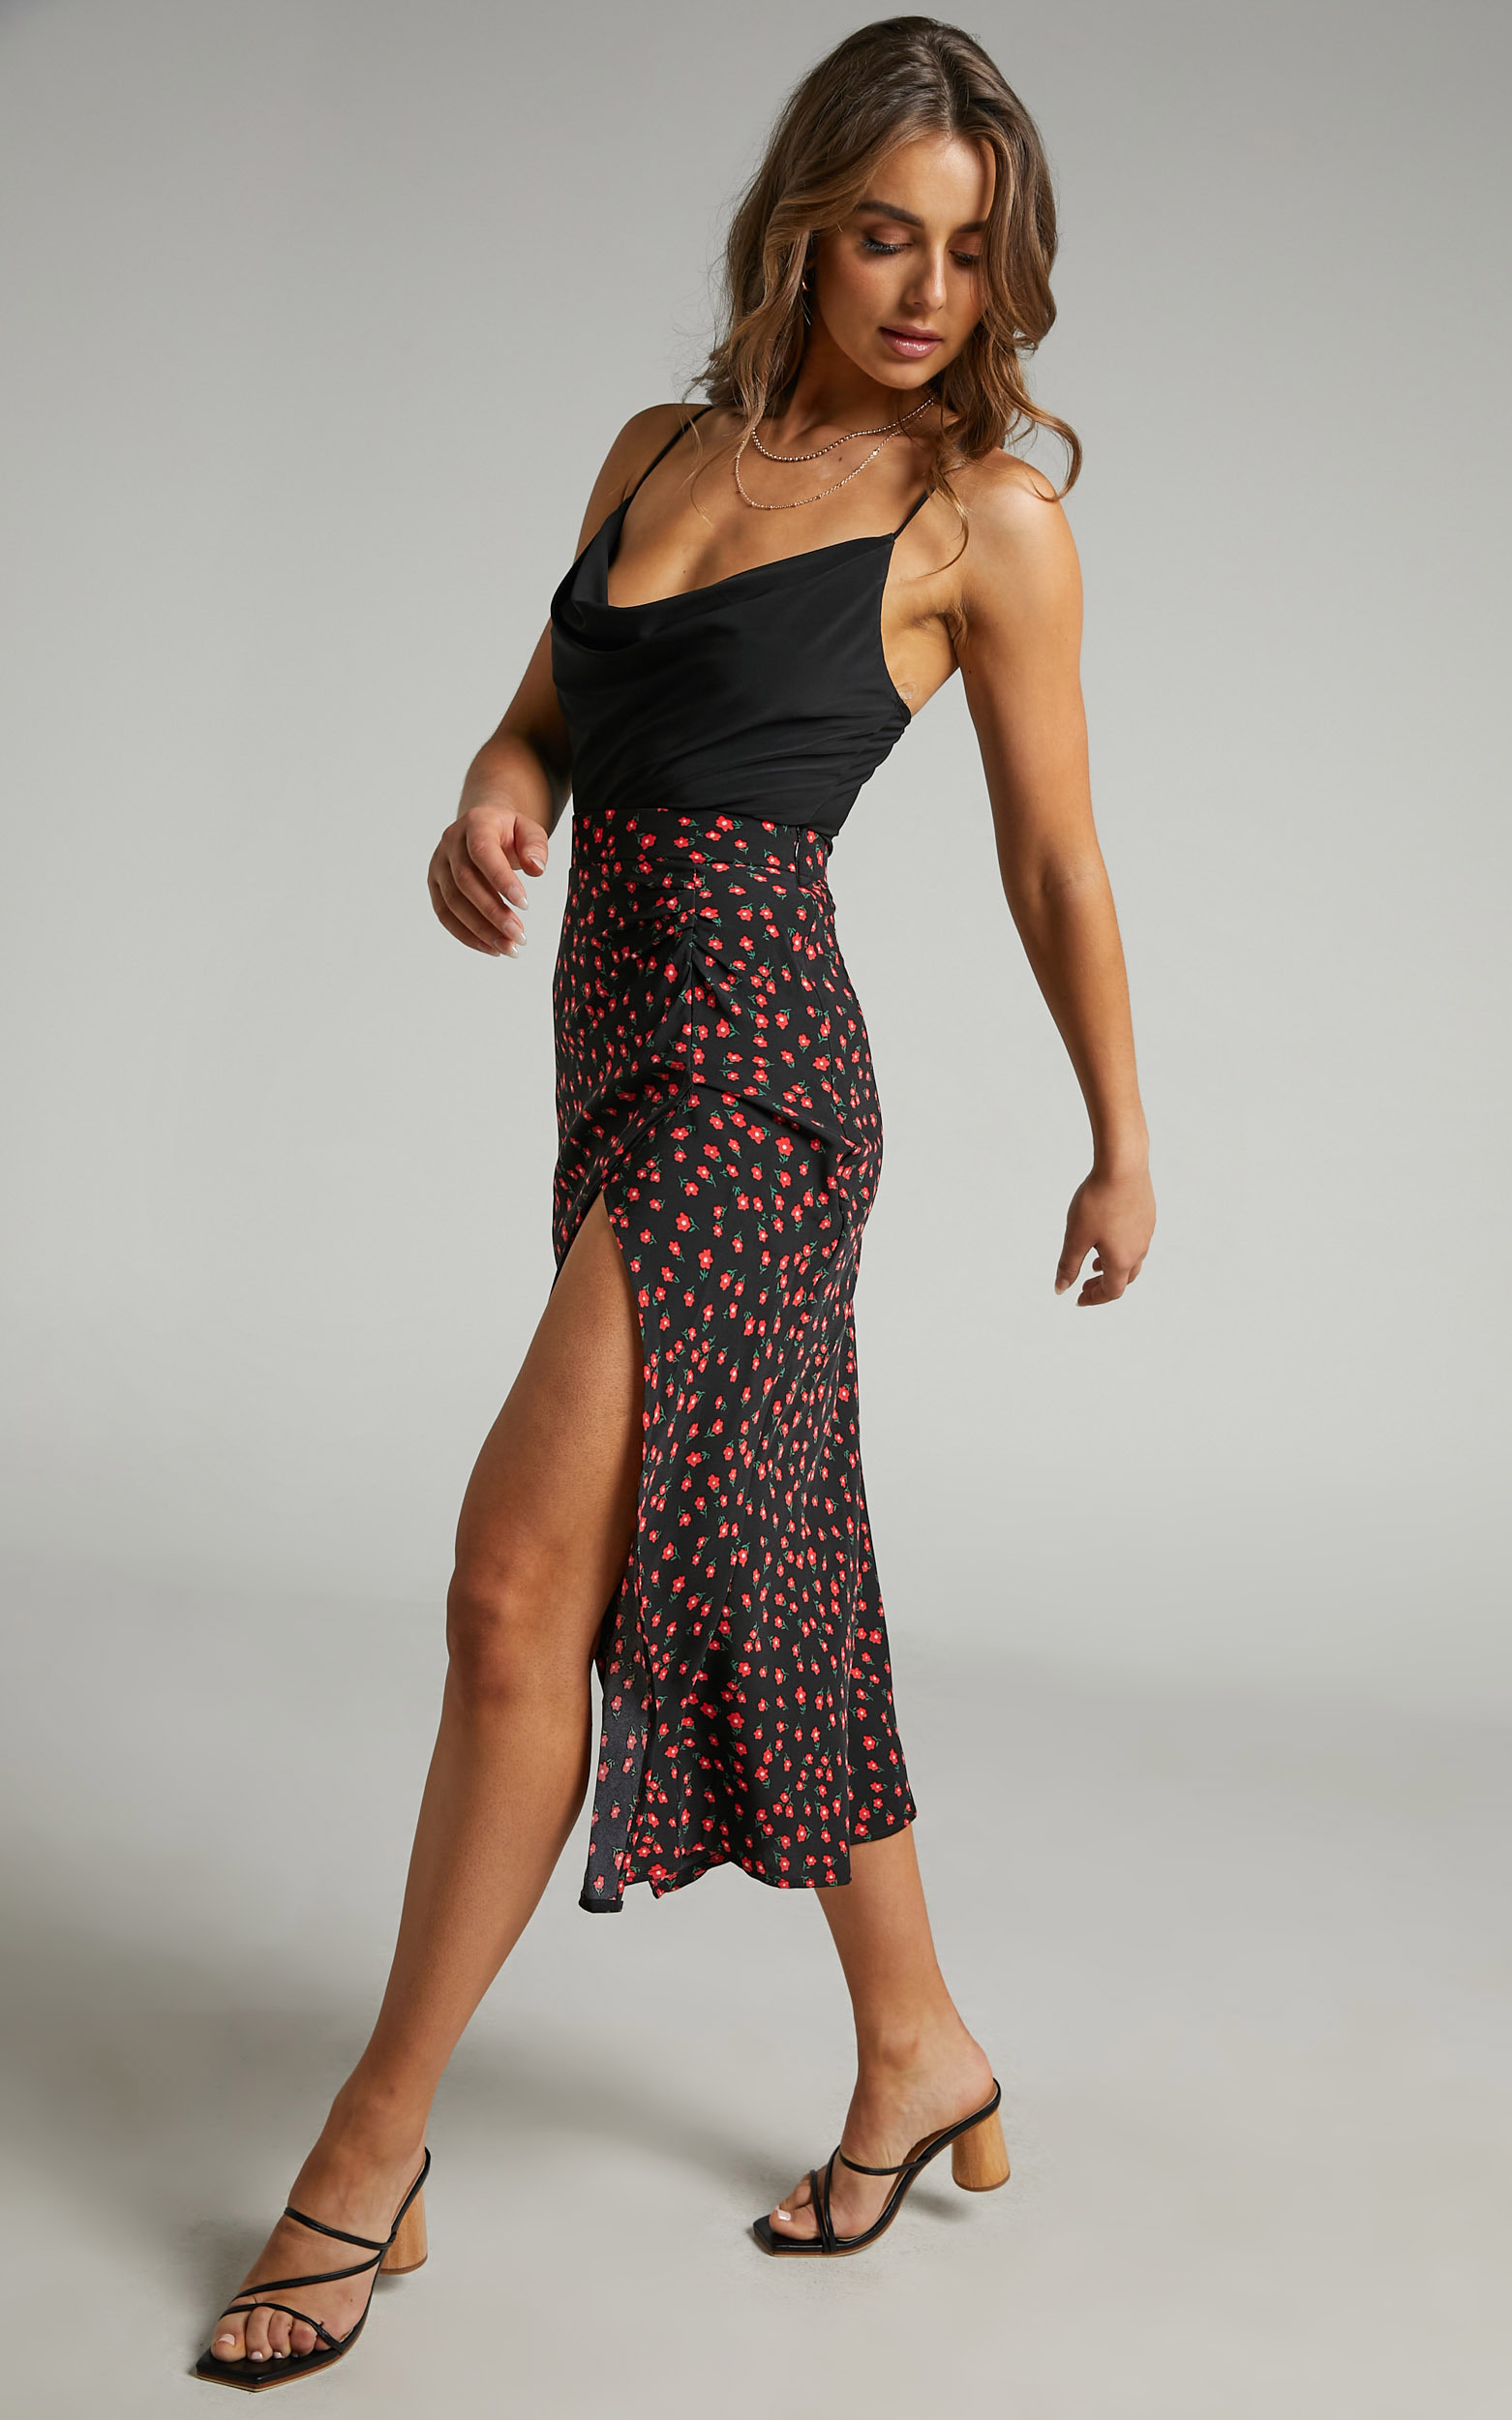 Evelyn Midi Skirt with Side Split in Black Floral - 06, BLK1, hi-res image number null